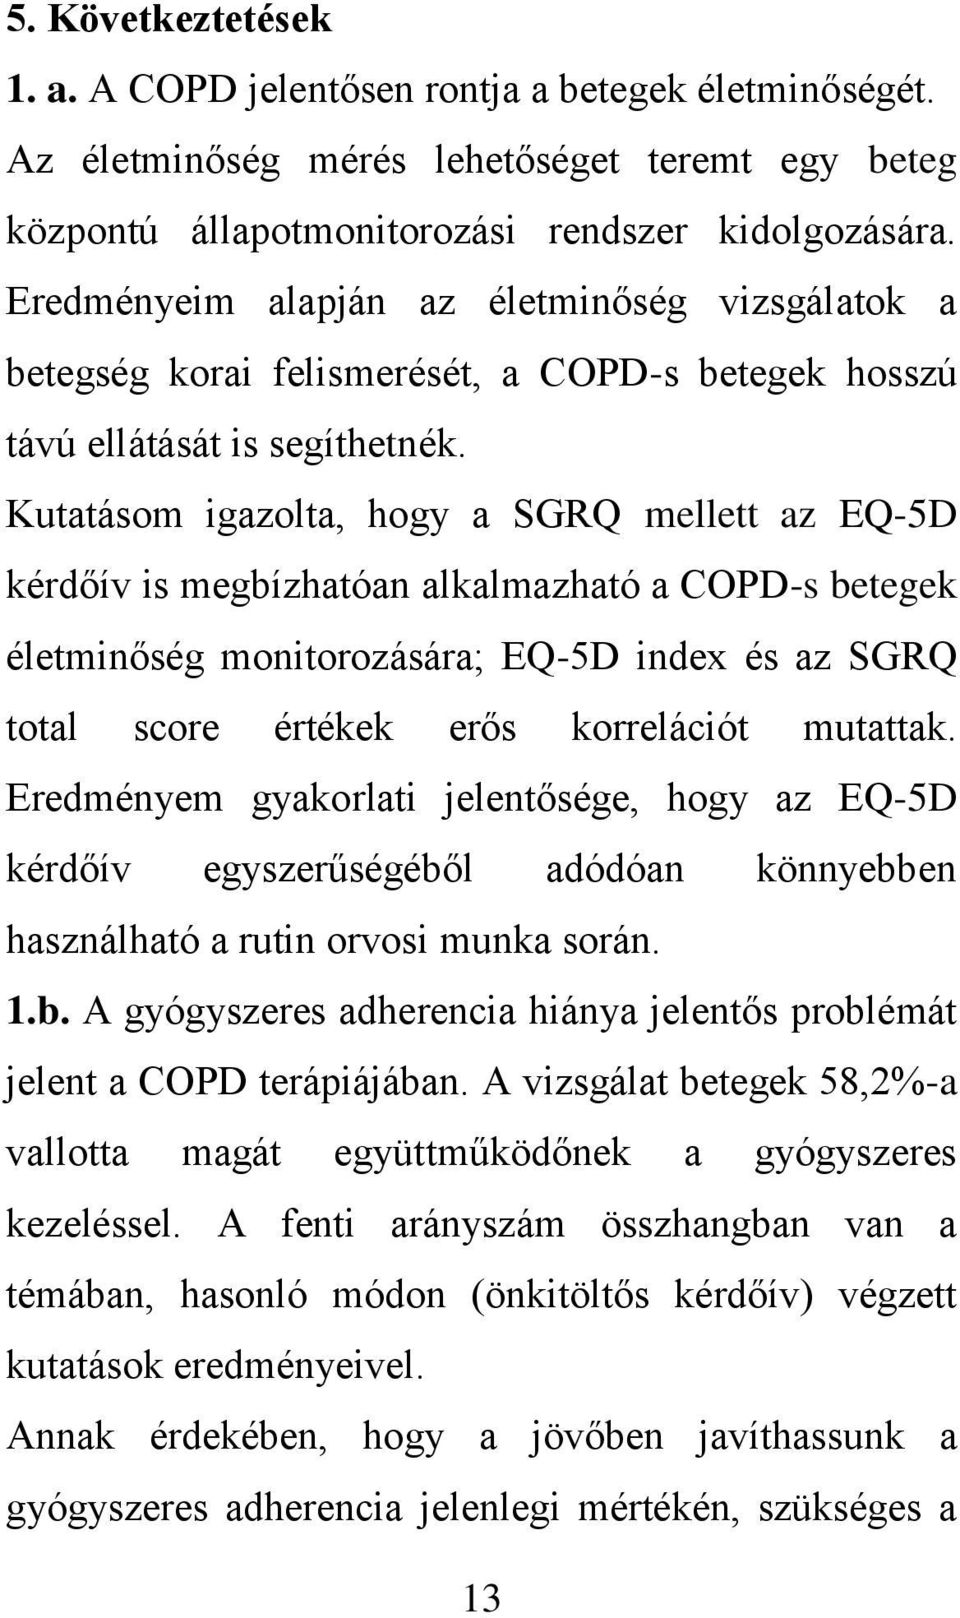 Kutatásom igazolta, hogy a SGRQ mellett az EQ-5D kérdőív is megbízhatóan alkalmazható a COPD-s betegek életminőség monitorozására; EQ-5D index és az SGRQ total score értékek erős korrelációt mutattak.